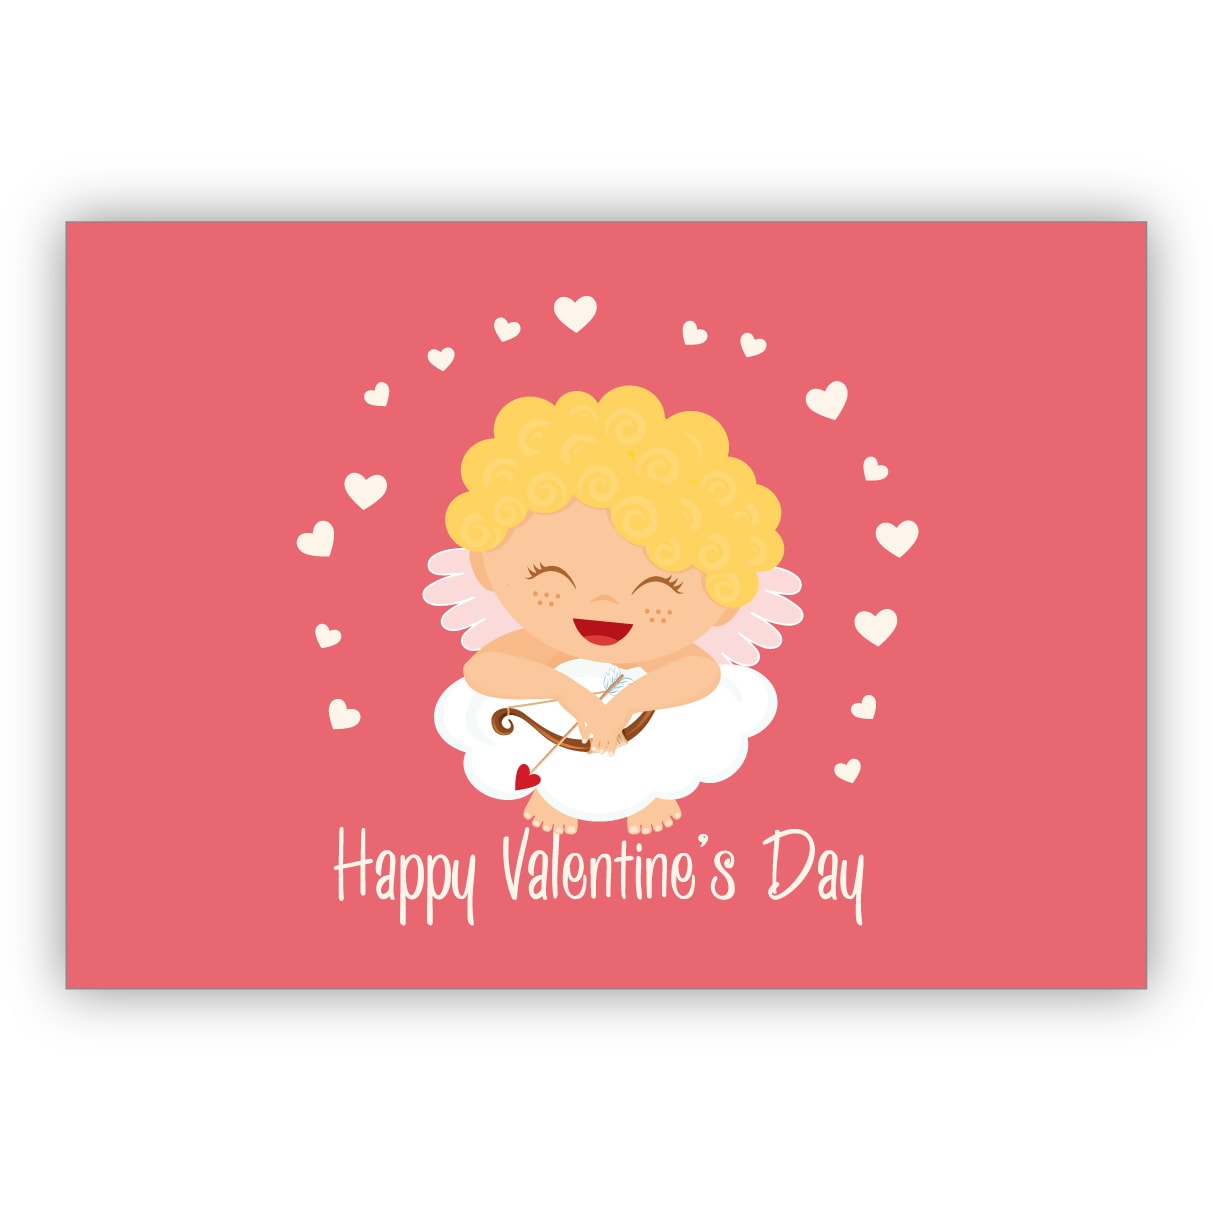 Lustige romantische Valentinskarte mit kleinem Amor und Herzen auf Wolke: Happy Valentine's Day